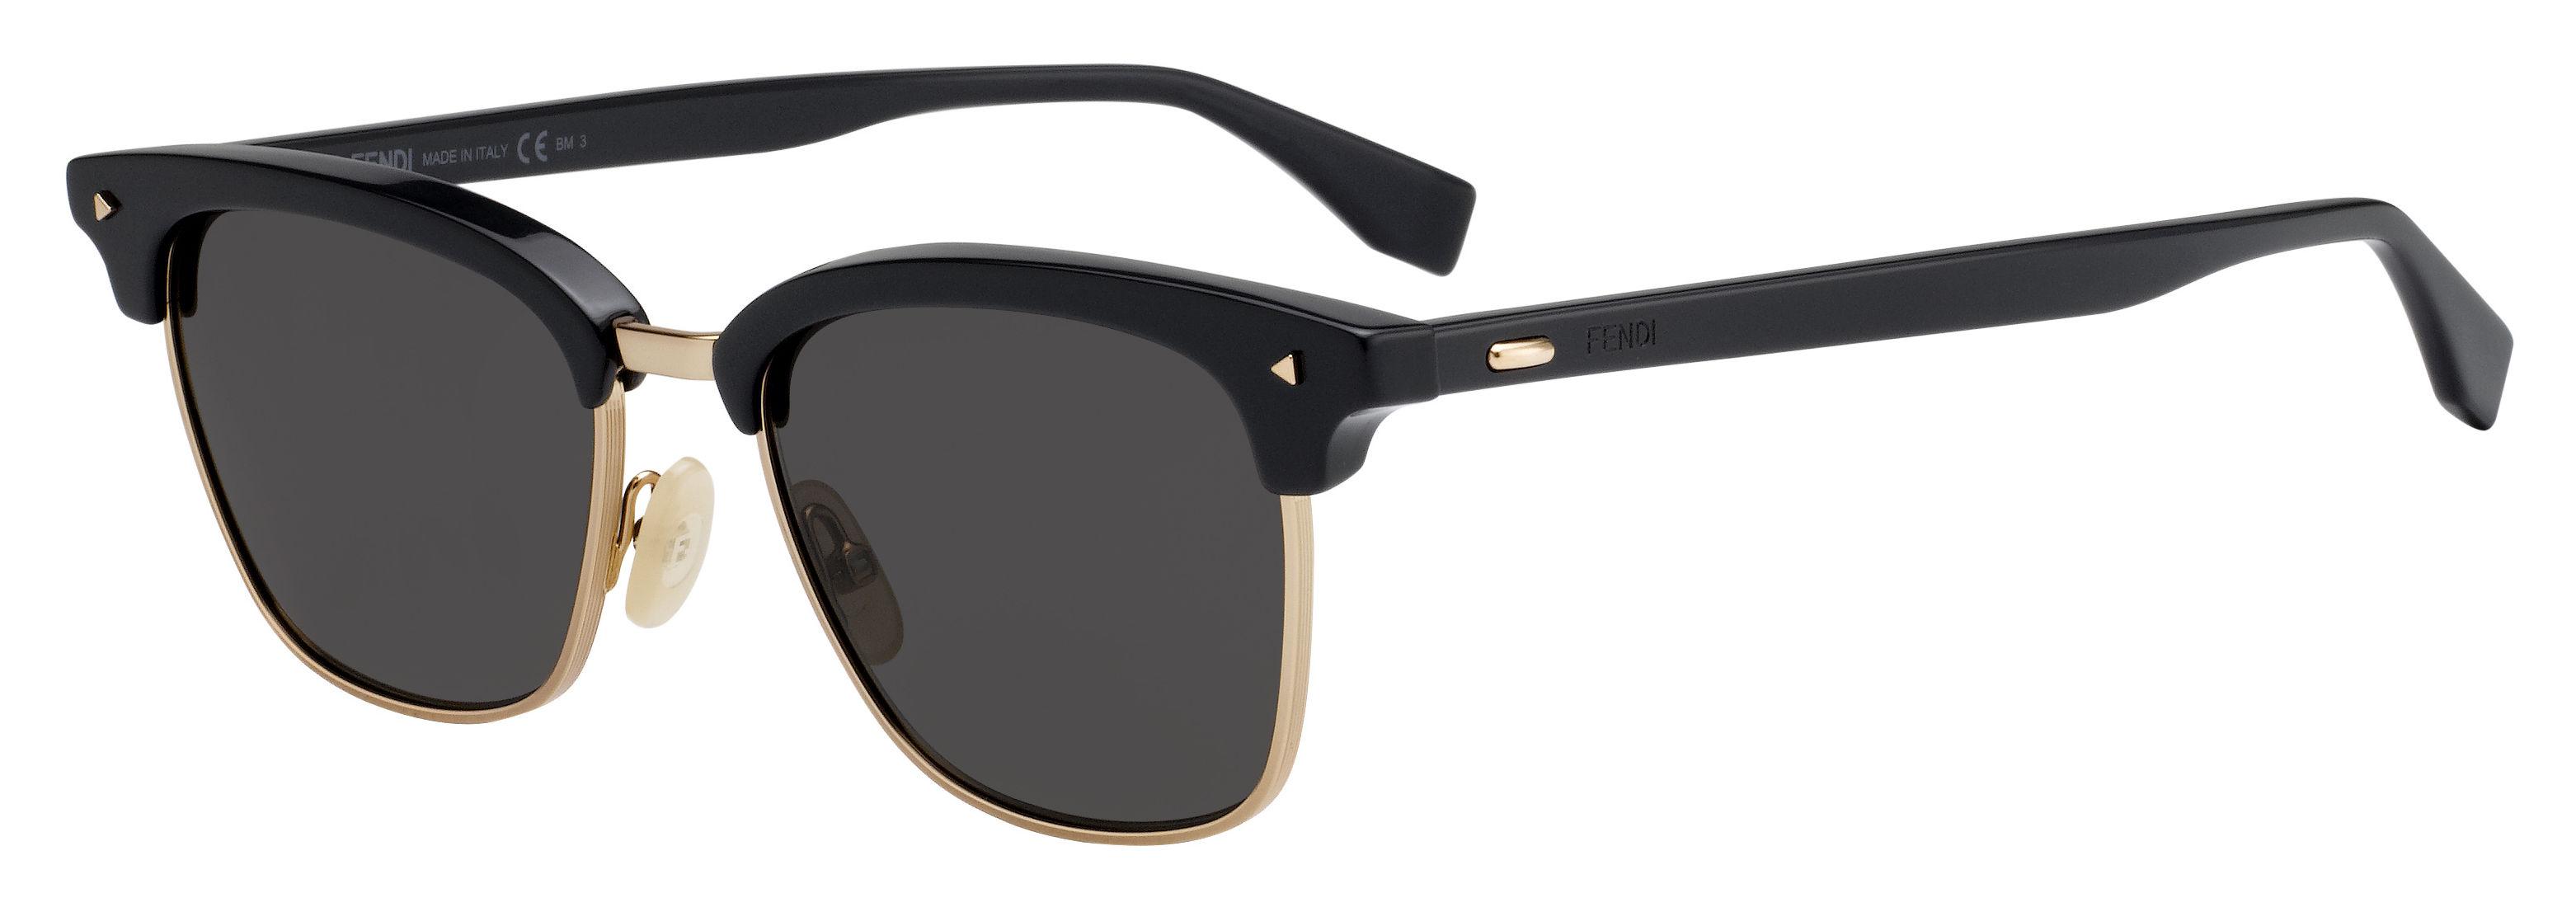 Fendi 0003/s Clubmaster Sunglasses in 